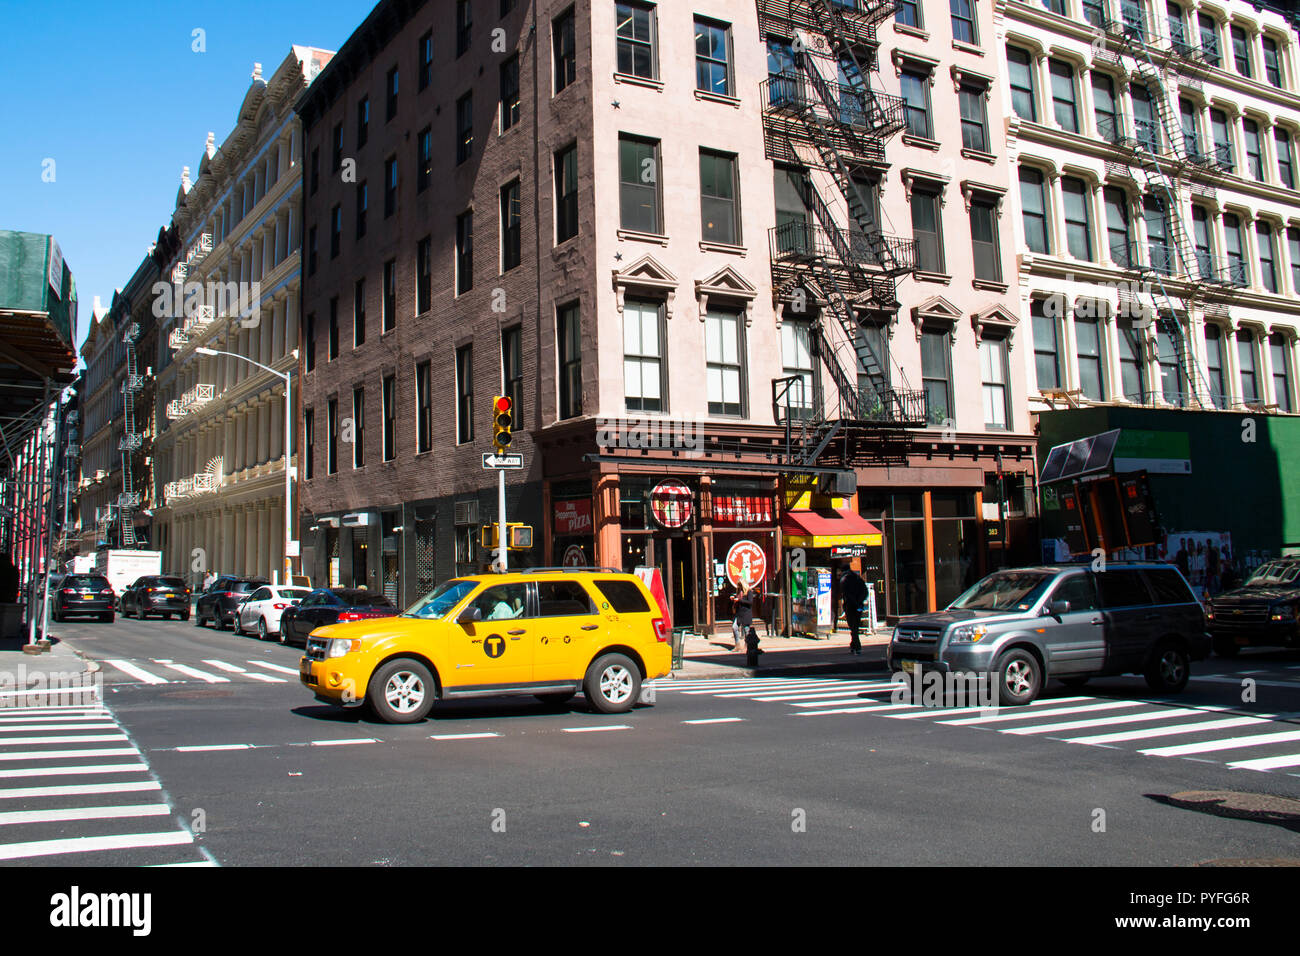 La città di NEW YORK, Stati Uniti d'America - Aprile 2018: Street view nel centro cittadino di Manhattan nel centro della città di New York, Stati Uniti d'America Foto Stock